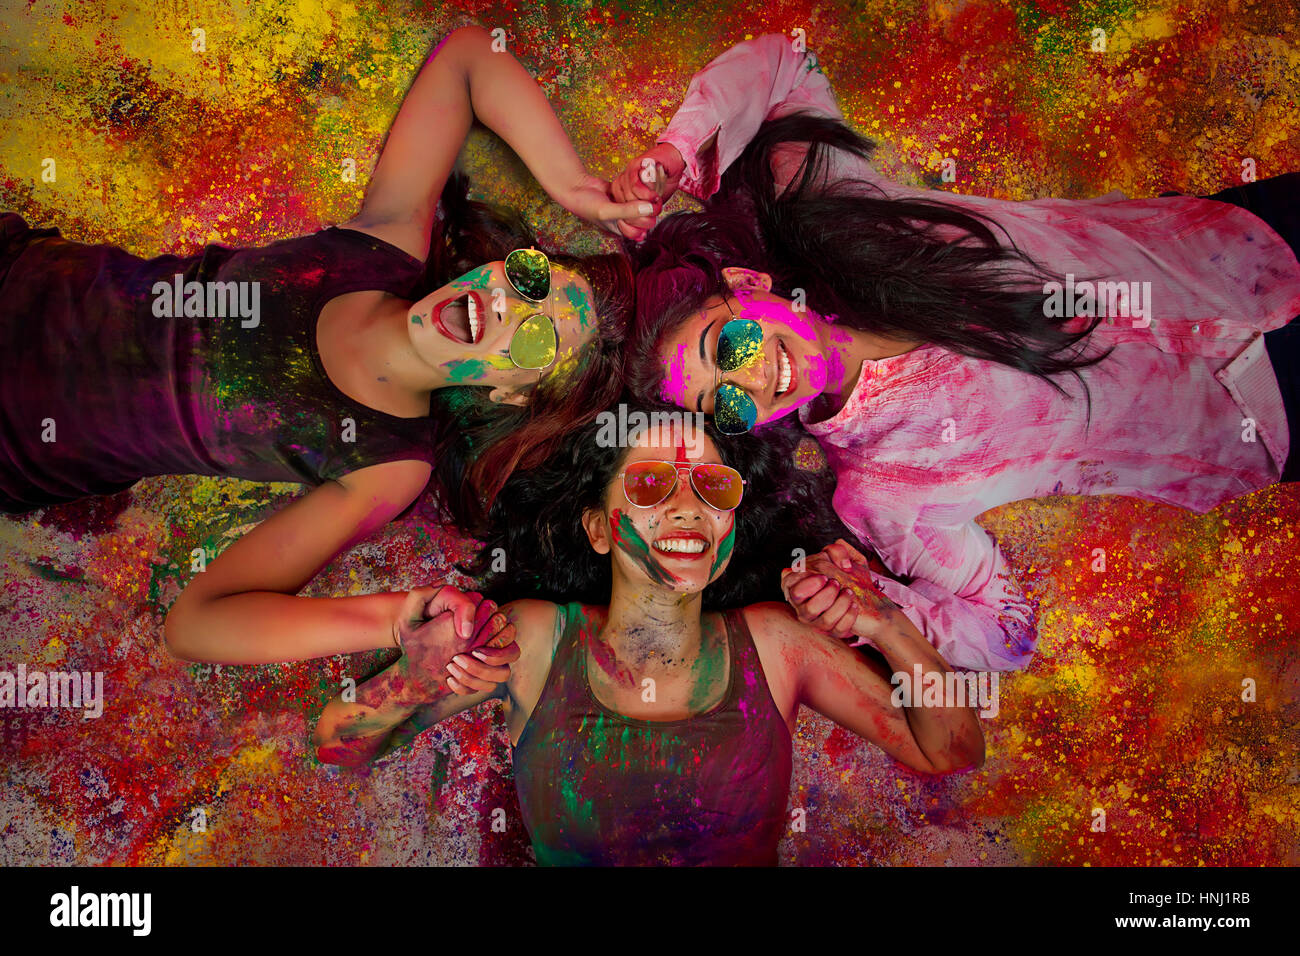 Elevato angolo di visione indiana di ragazze adolescenti giacenti e coperto di polvere colorata durante Holi festival a colori Foto Stock